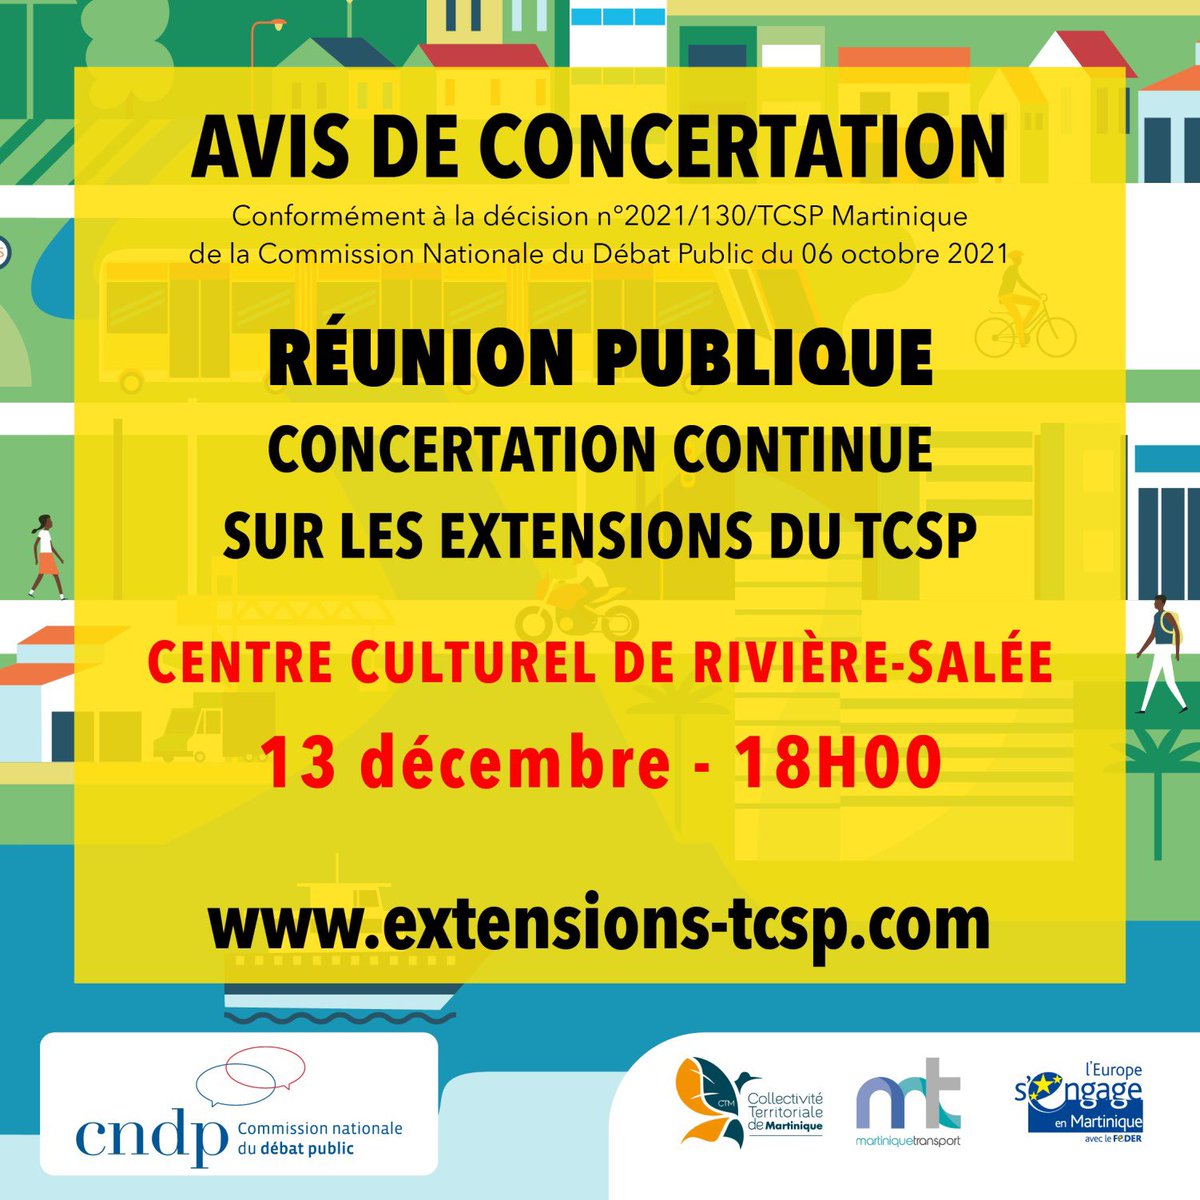 📢 Réunion Publique sur les Extensions du TCSP

🗓️ Mercredi 13 décembre 2023, 18h00 - Centre Culturel de Rivière-Salée

#TCSPMartinique #RéunionPublique #MobilitéDurable #Martinique